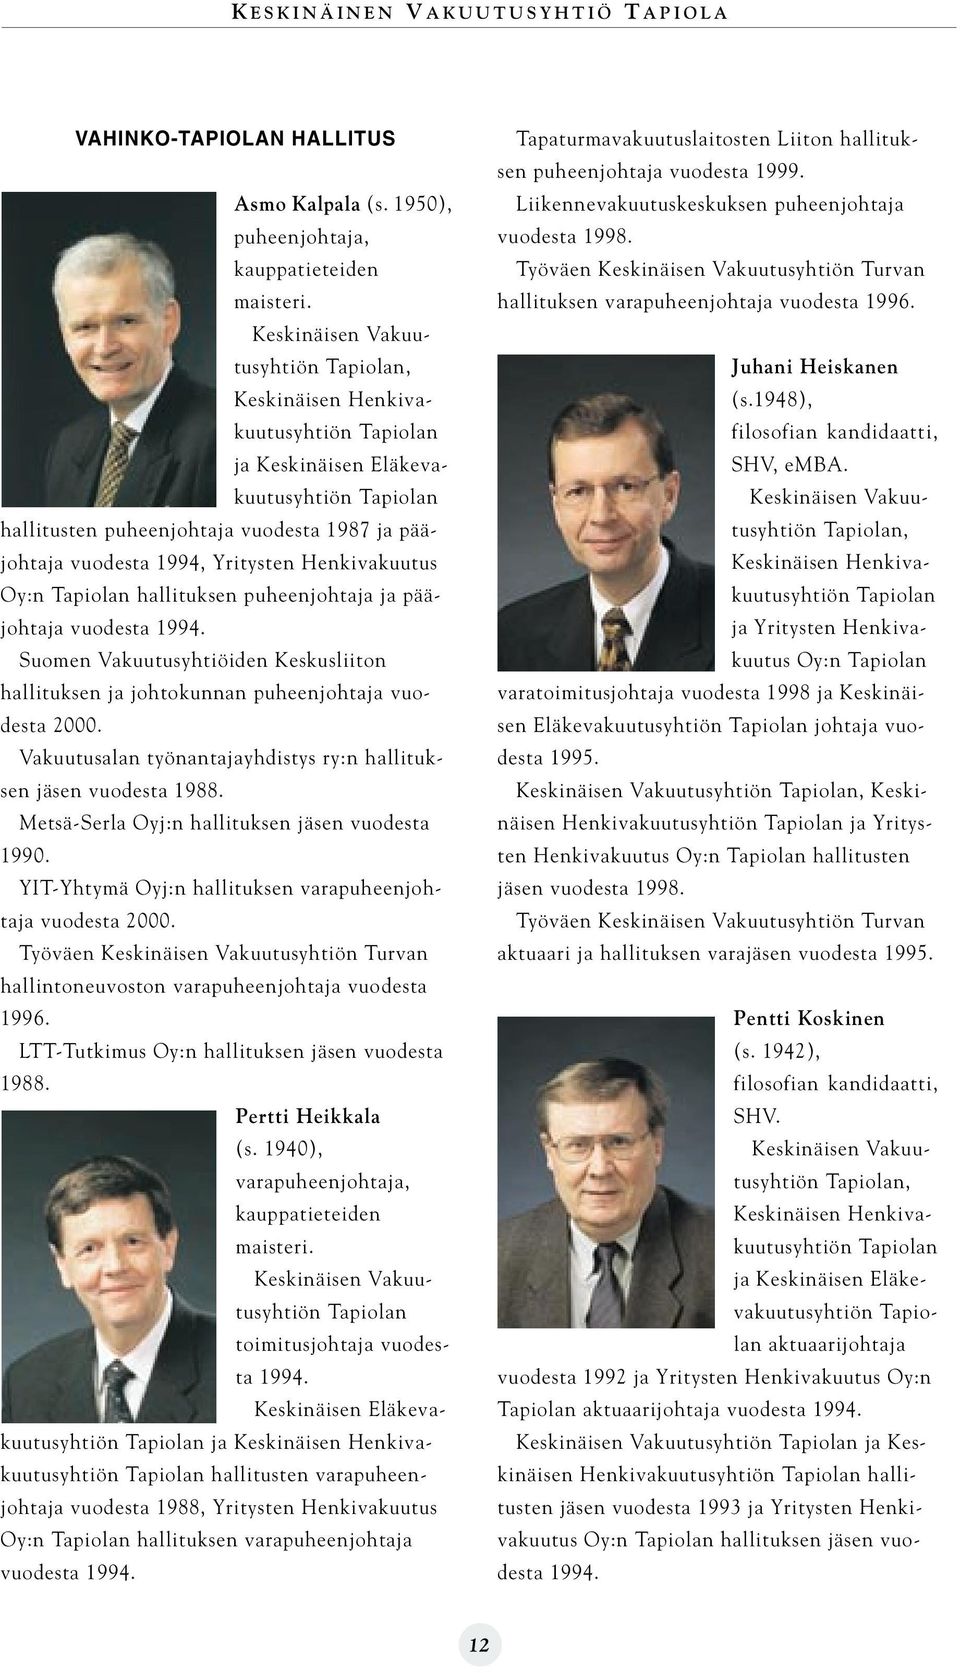 Yritysten Henkivakuutus Oy:n Tapiolan hallituksen puheenjohtaja ja pääjohtaja vuodesta 1994. Suomen Vakuutusyhtiöiden Keskusliiton hallituksen ja johtokunnan puheenjohtaja vuodesta 2000.